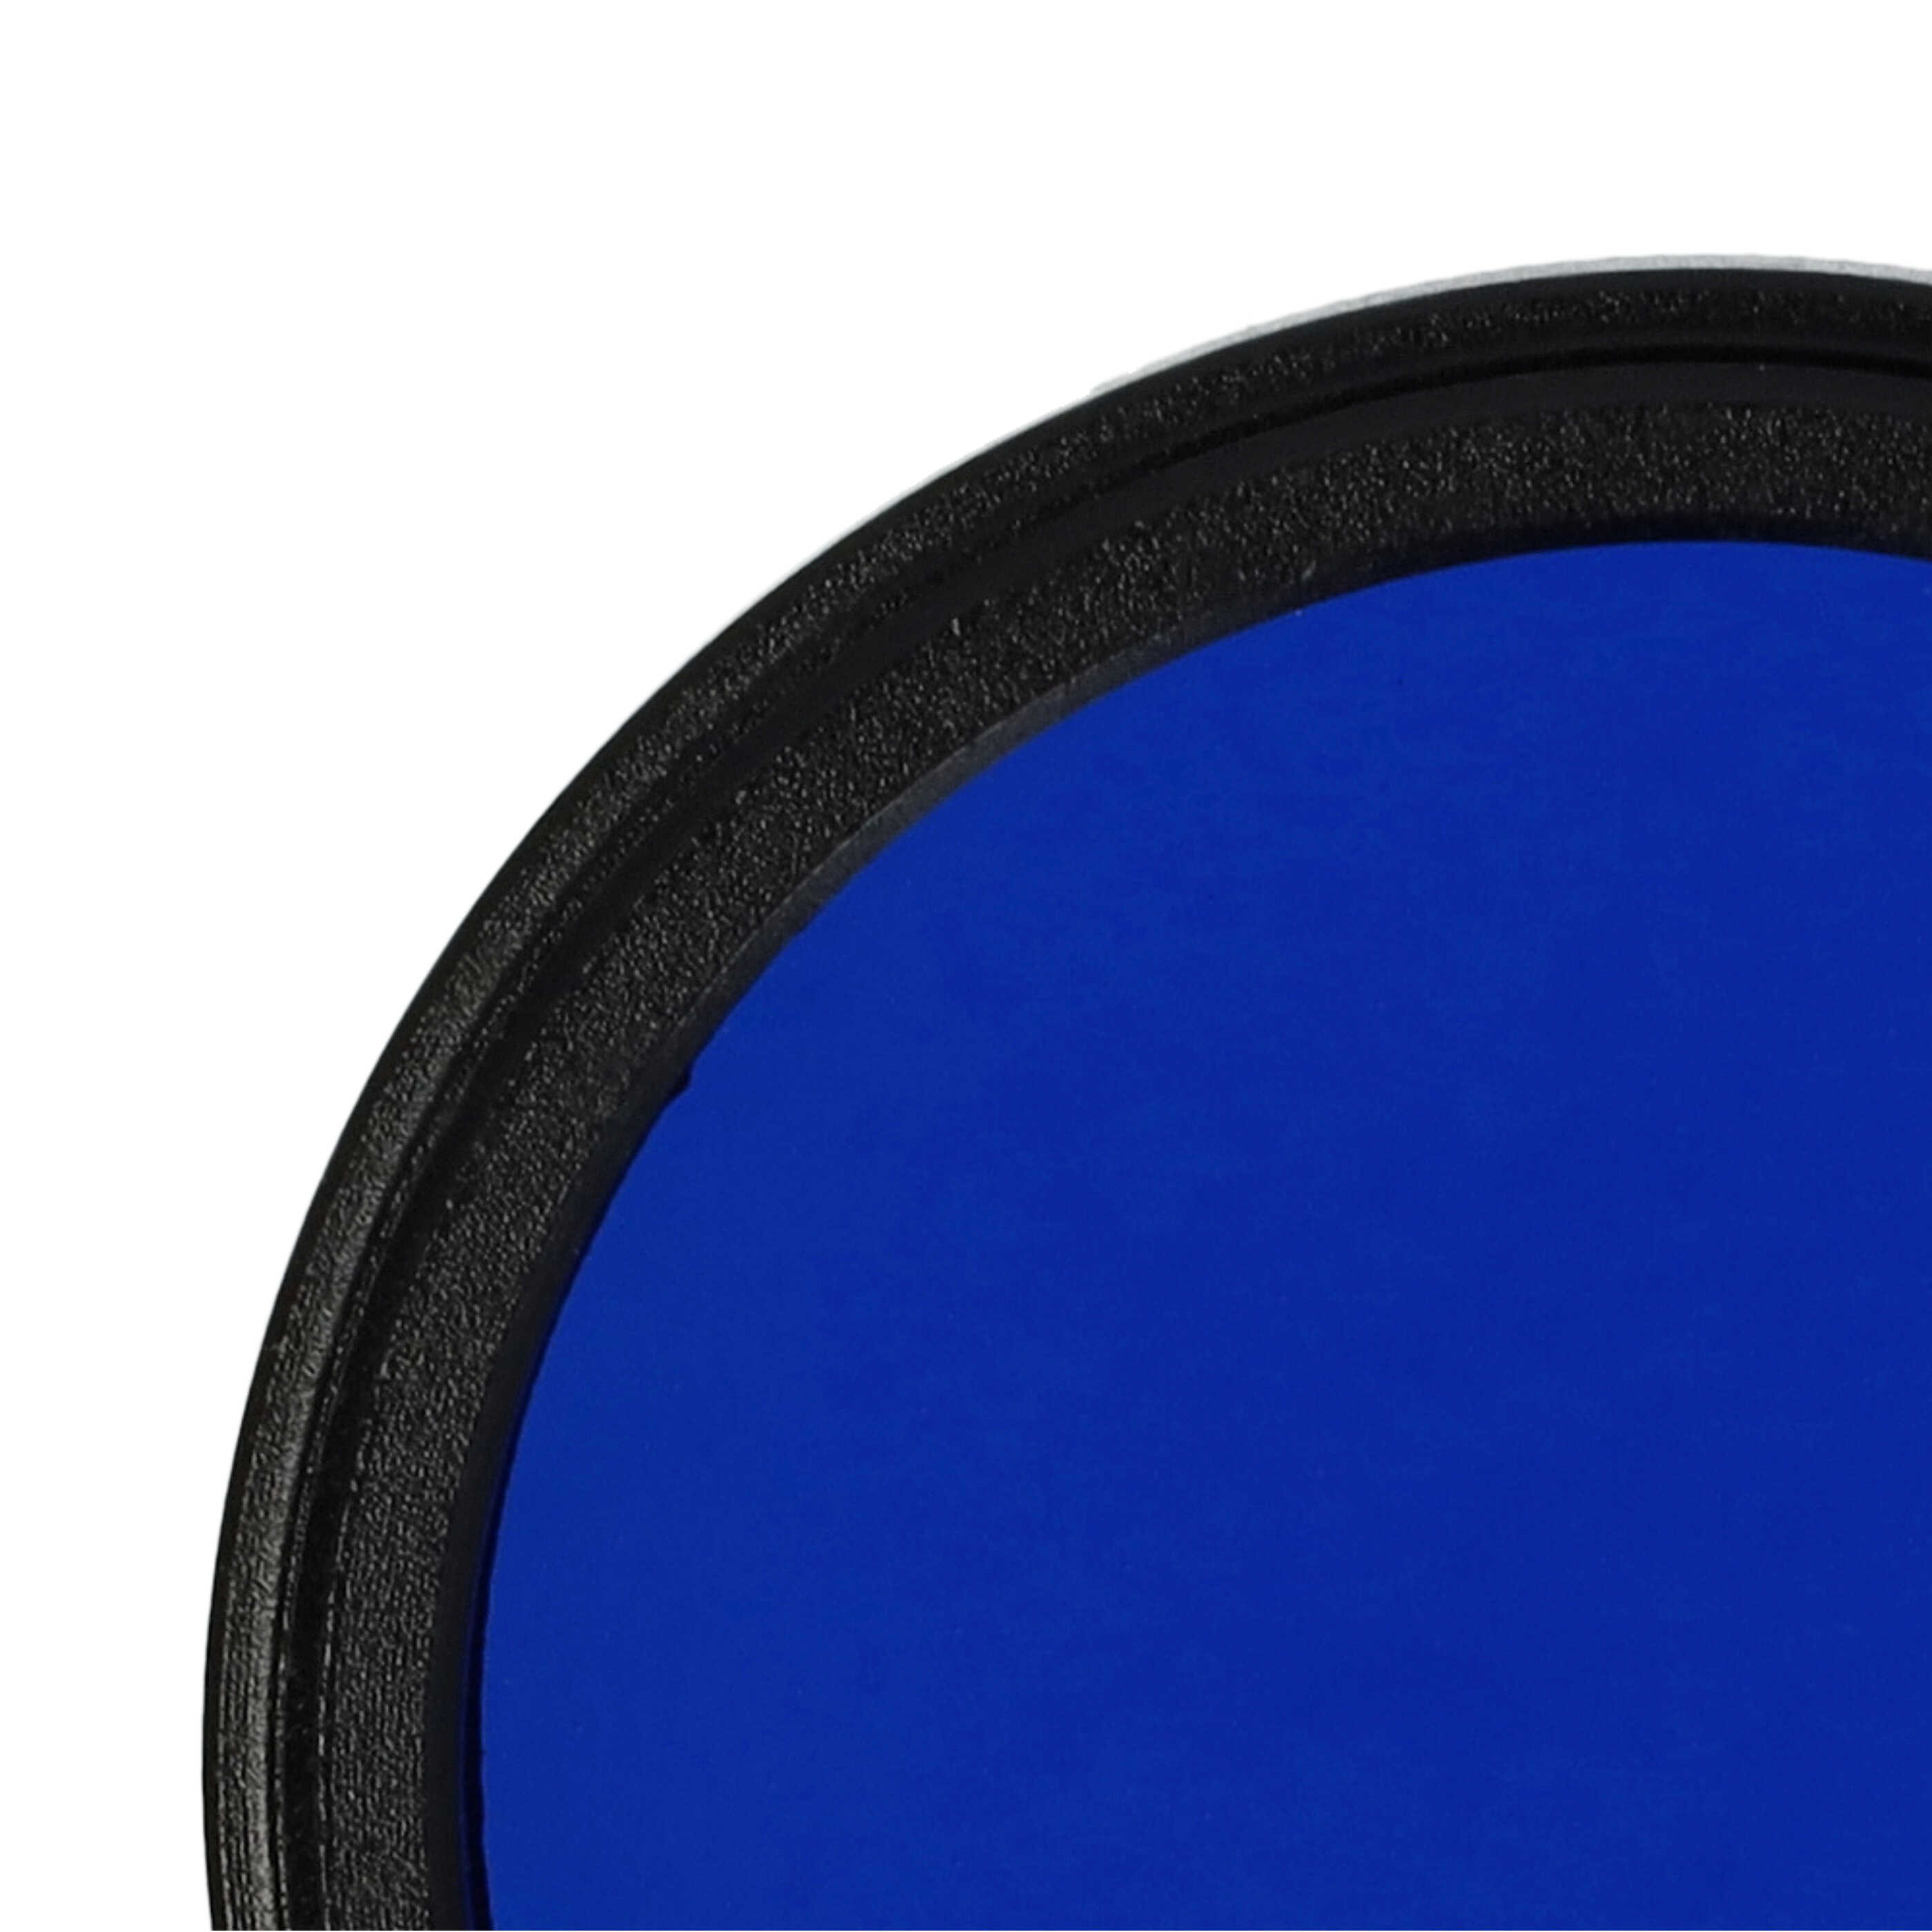 Farbfilter blau passend für Kamera Objektive mit 37 mm Filtergewinde - Blaufilter